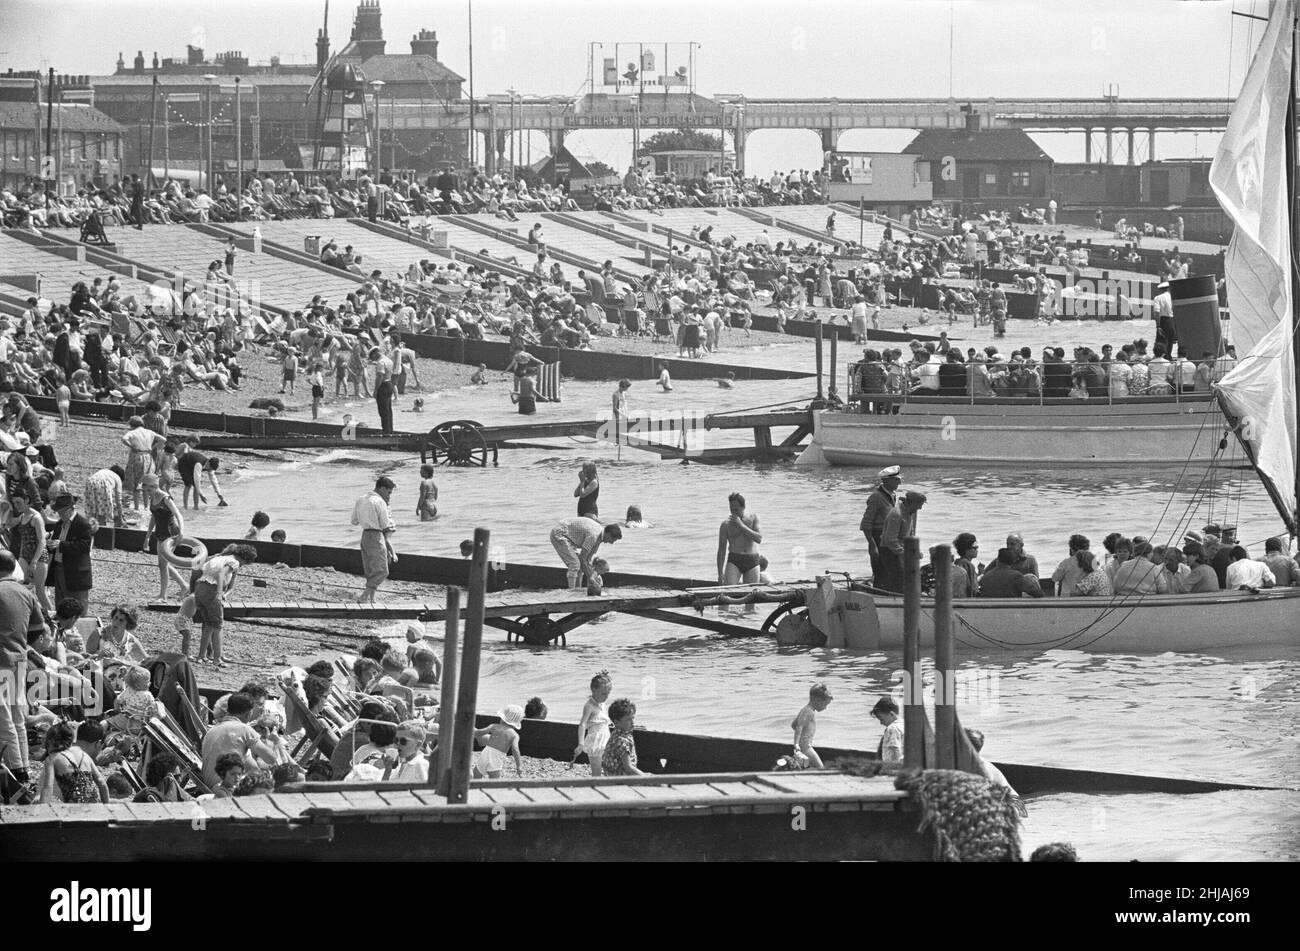 Les voyageurs d'une journée du East End londonien s'inondent vers le front de mer et les plages de Southend pour profiter du soleil d'été.Southend, Essex.24th juillet 1963 Banque D'Images